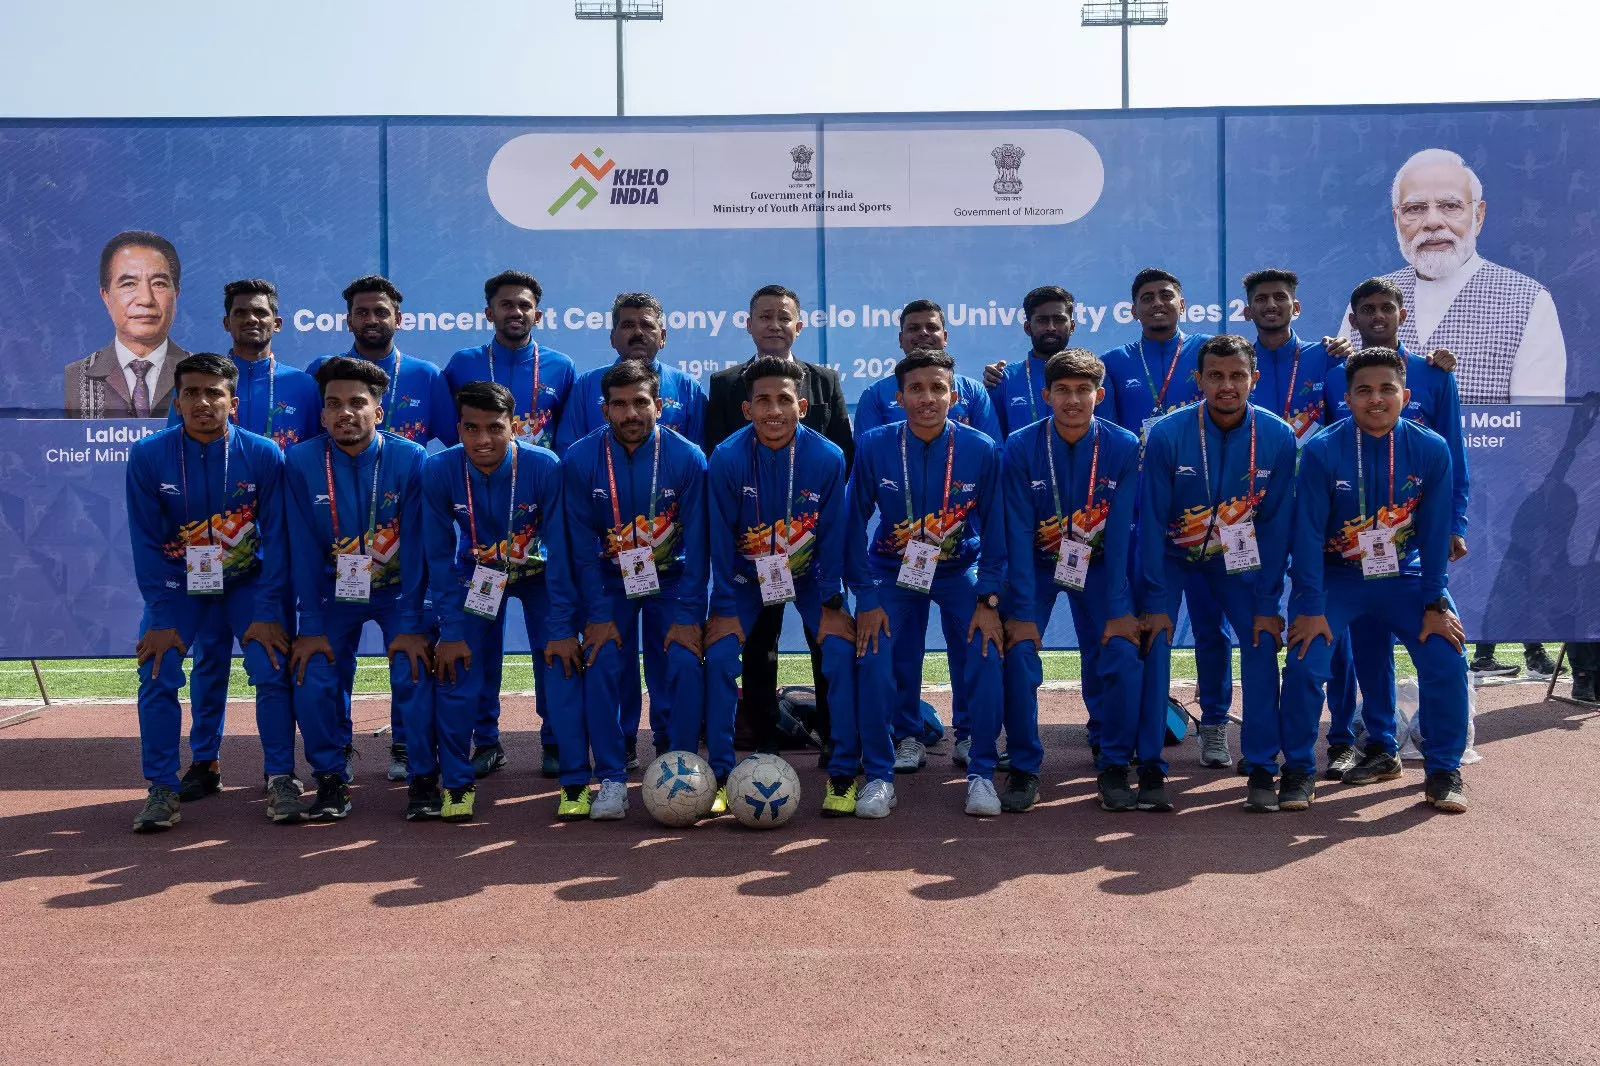 खेल मंत्री ने खेलो इंडिया यूनिवर्सिटी गेम्स के तहत पुरुष फुटबॉल टूर्नामेंट का उद्घाटन किया